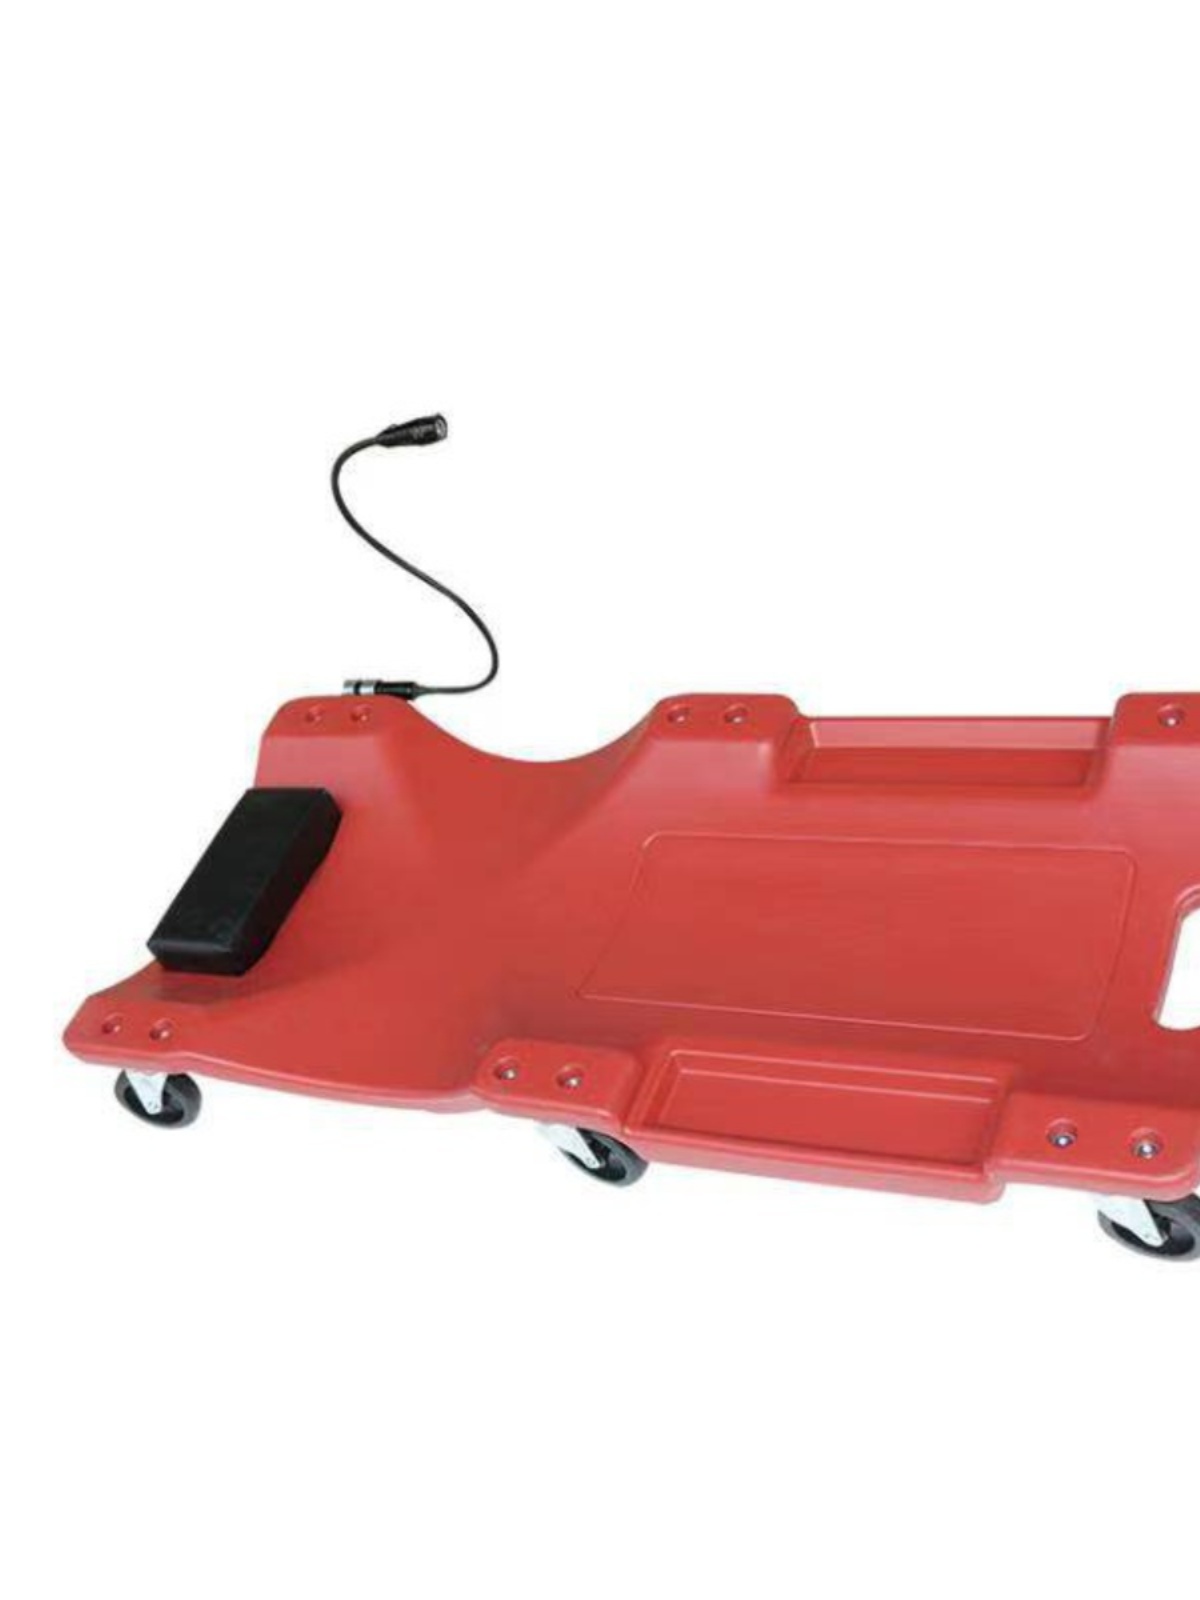 销。36寸40寸加厚款躺板滑板修车睡板车汽车修汽保专用工具包邮品